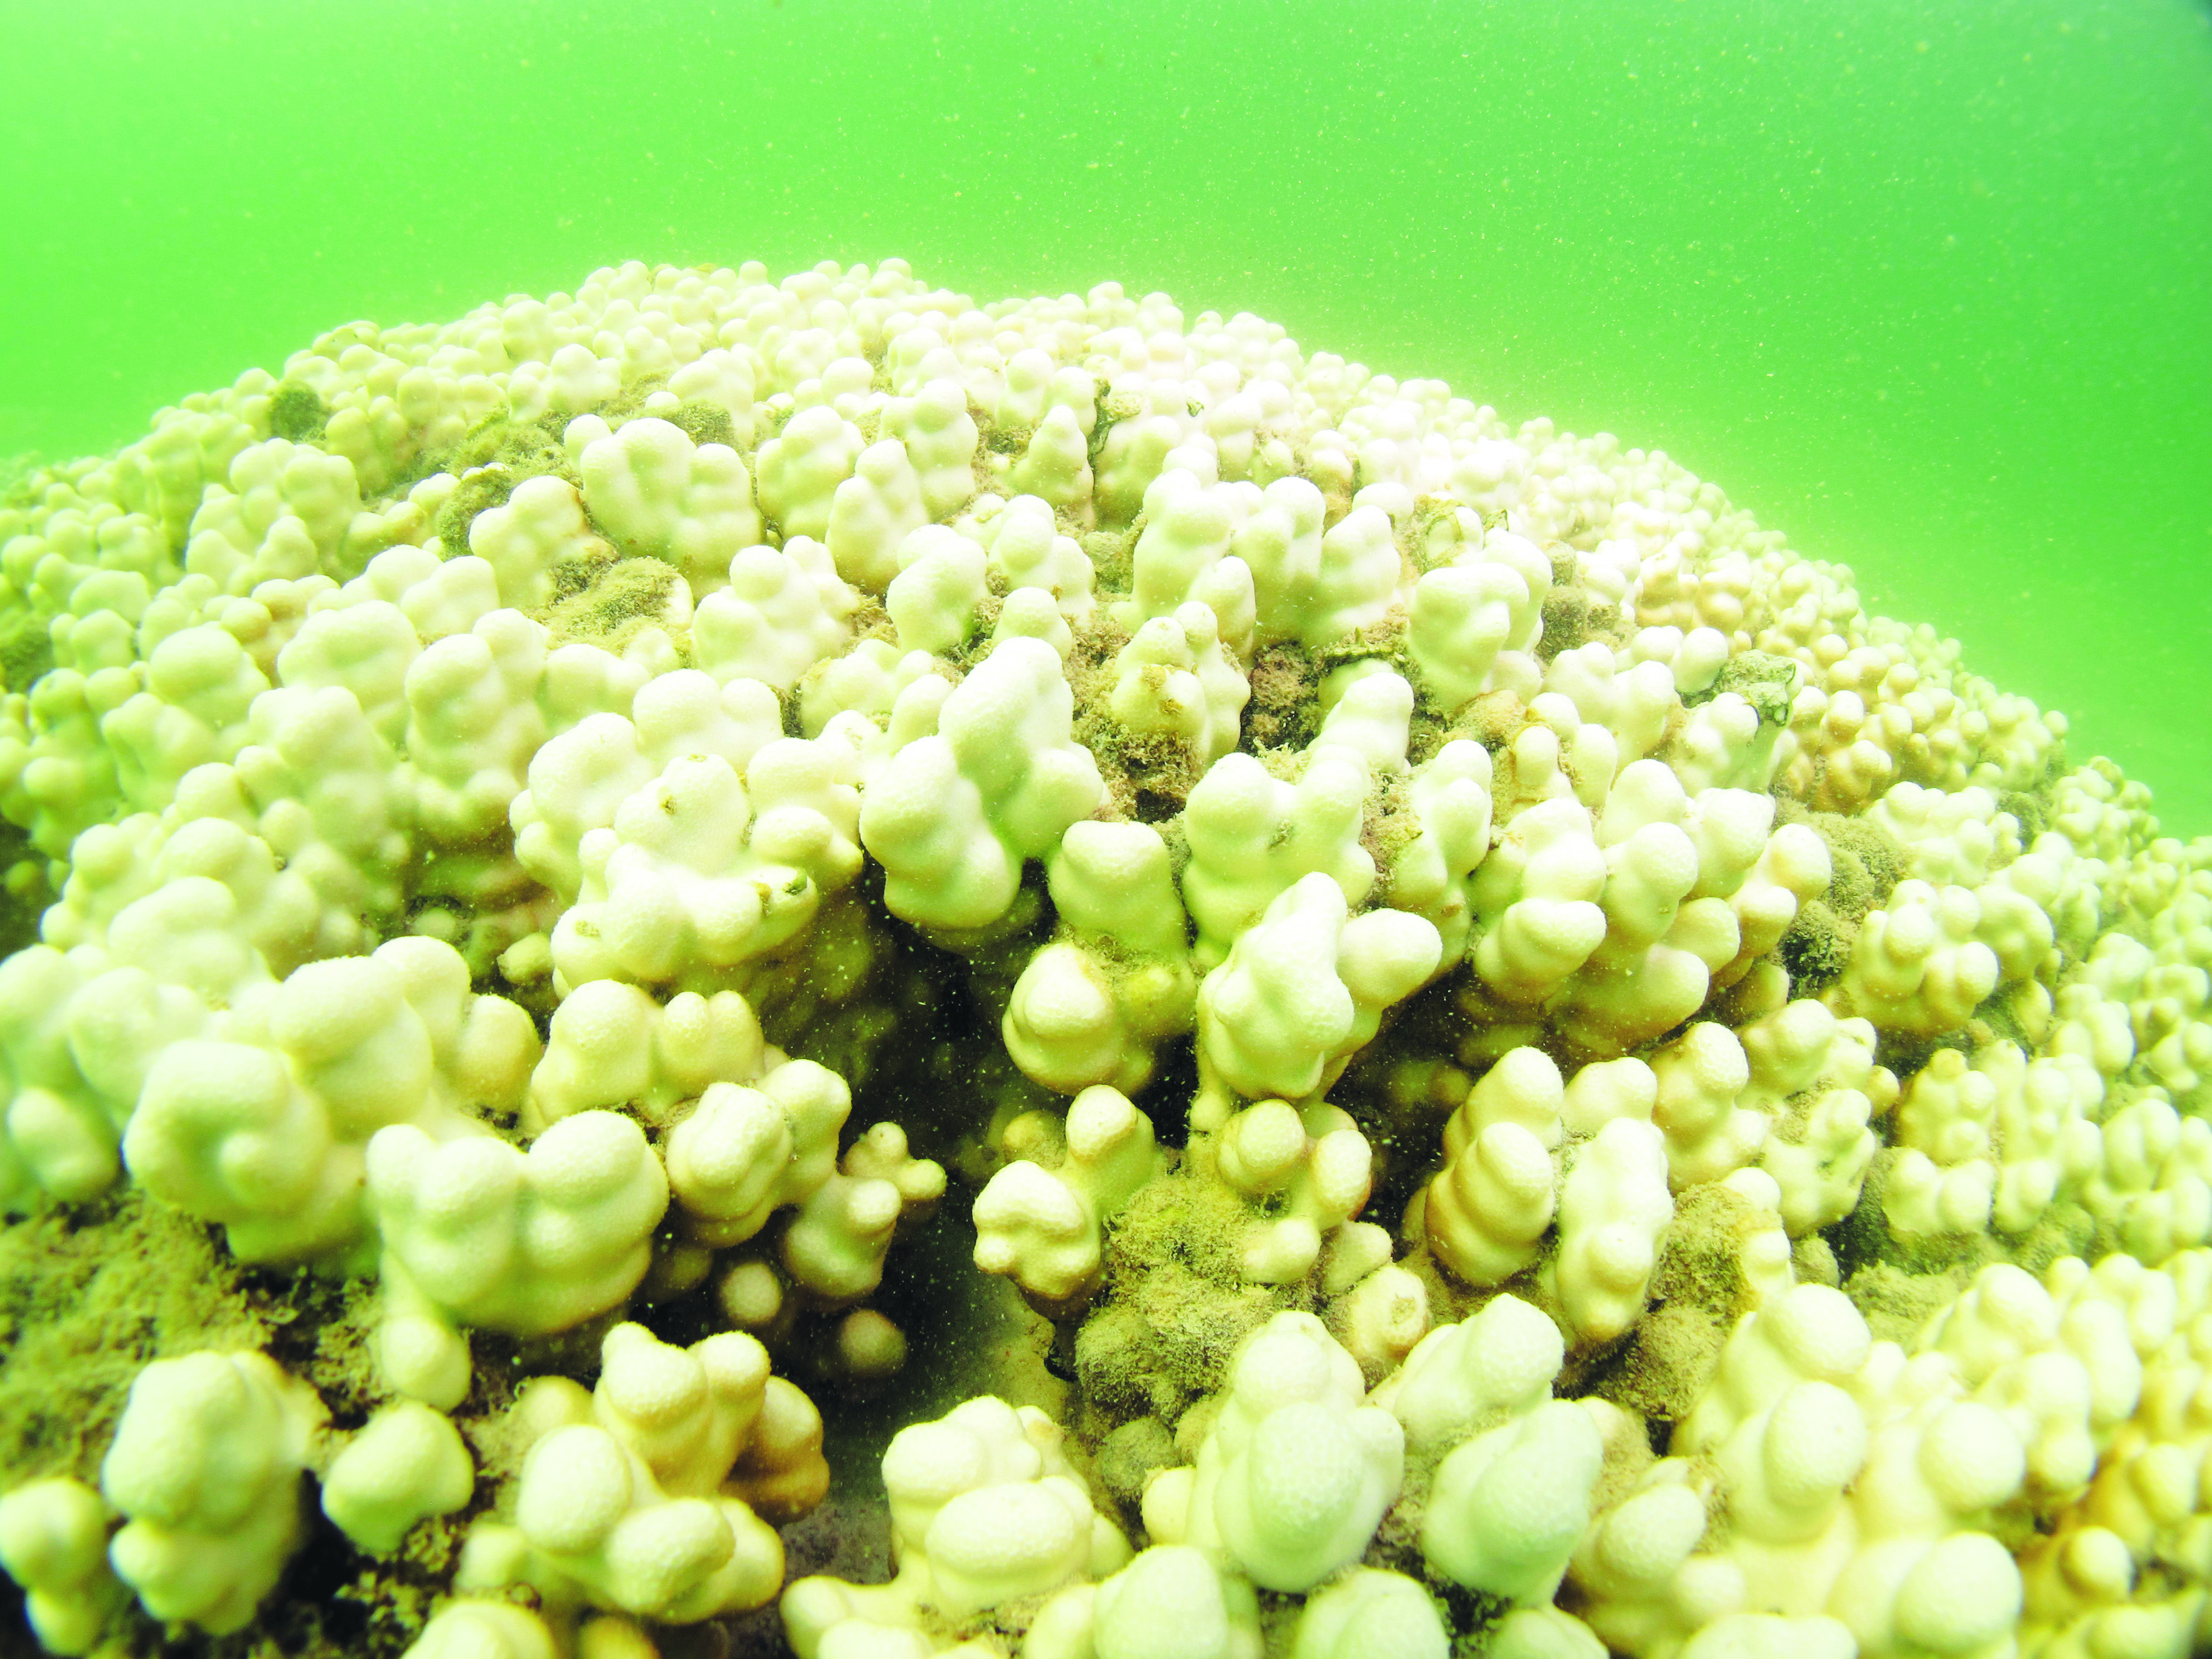 فريق الغوص يرصد ظاهرة ابيضاض واسعة لمواقع الشعاب المرجانية في بحر الكويت